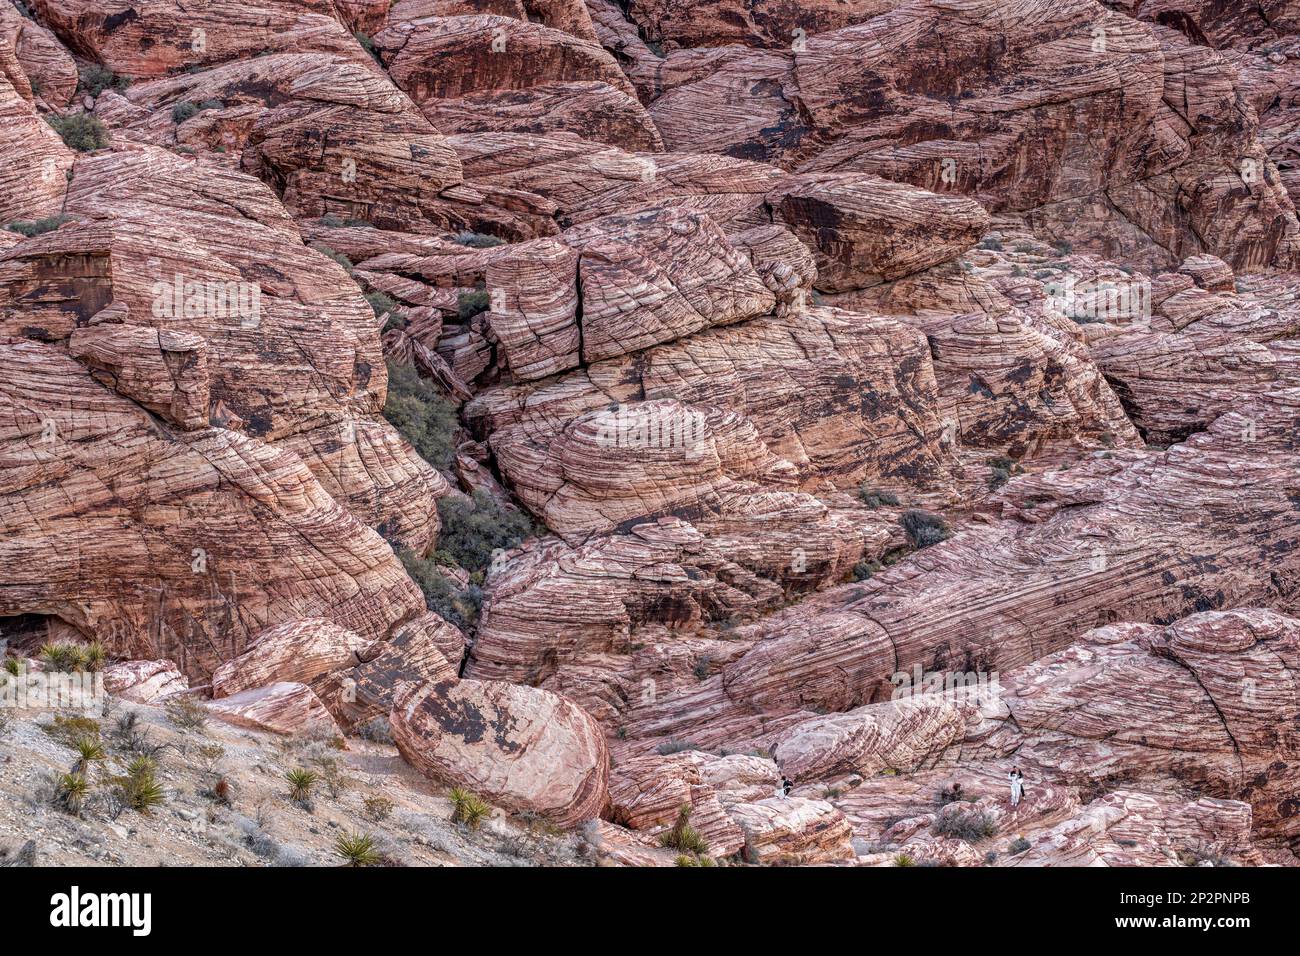 Une belle scène aride, sauvage et montagneuse dans le désert de Red Rock Canyon à Las Vegas, Nevada, où les randonneurs et les restaurationnistes vont à enj Banque D'Images